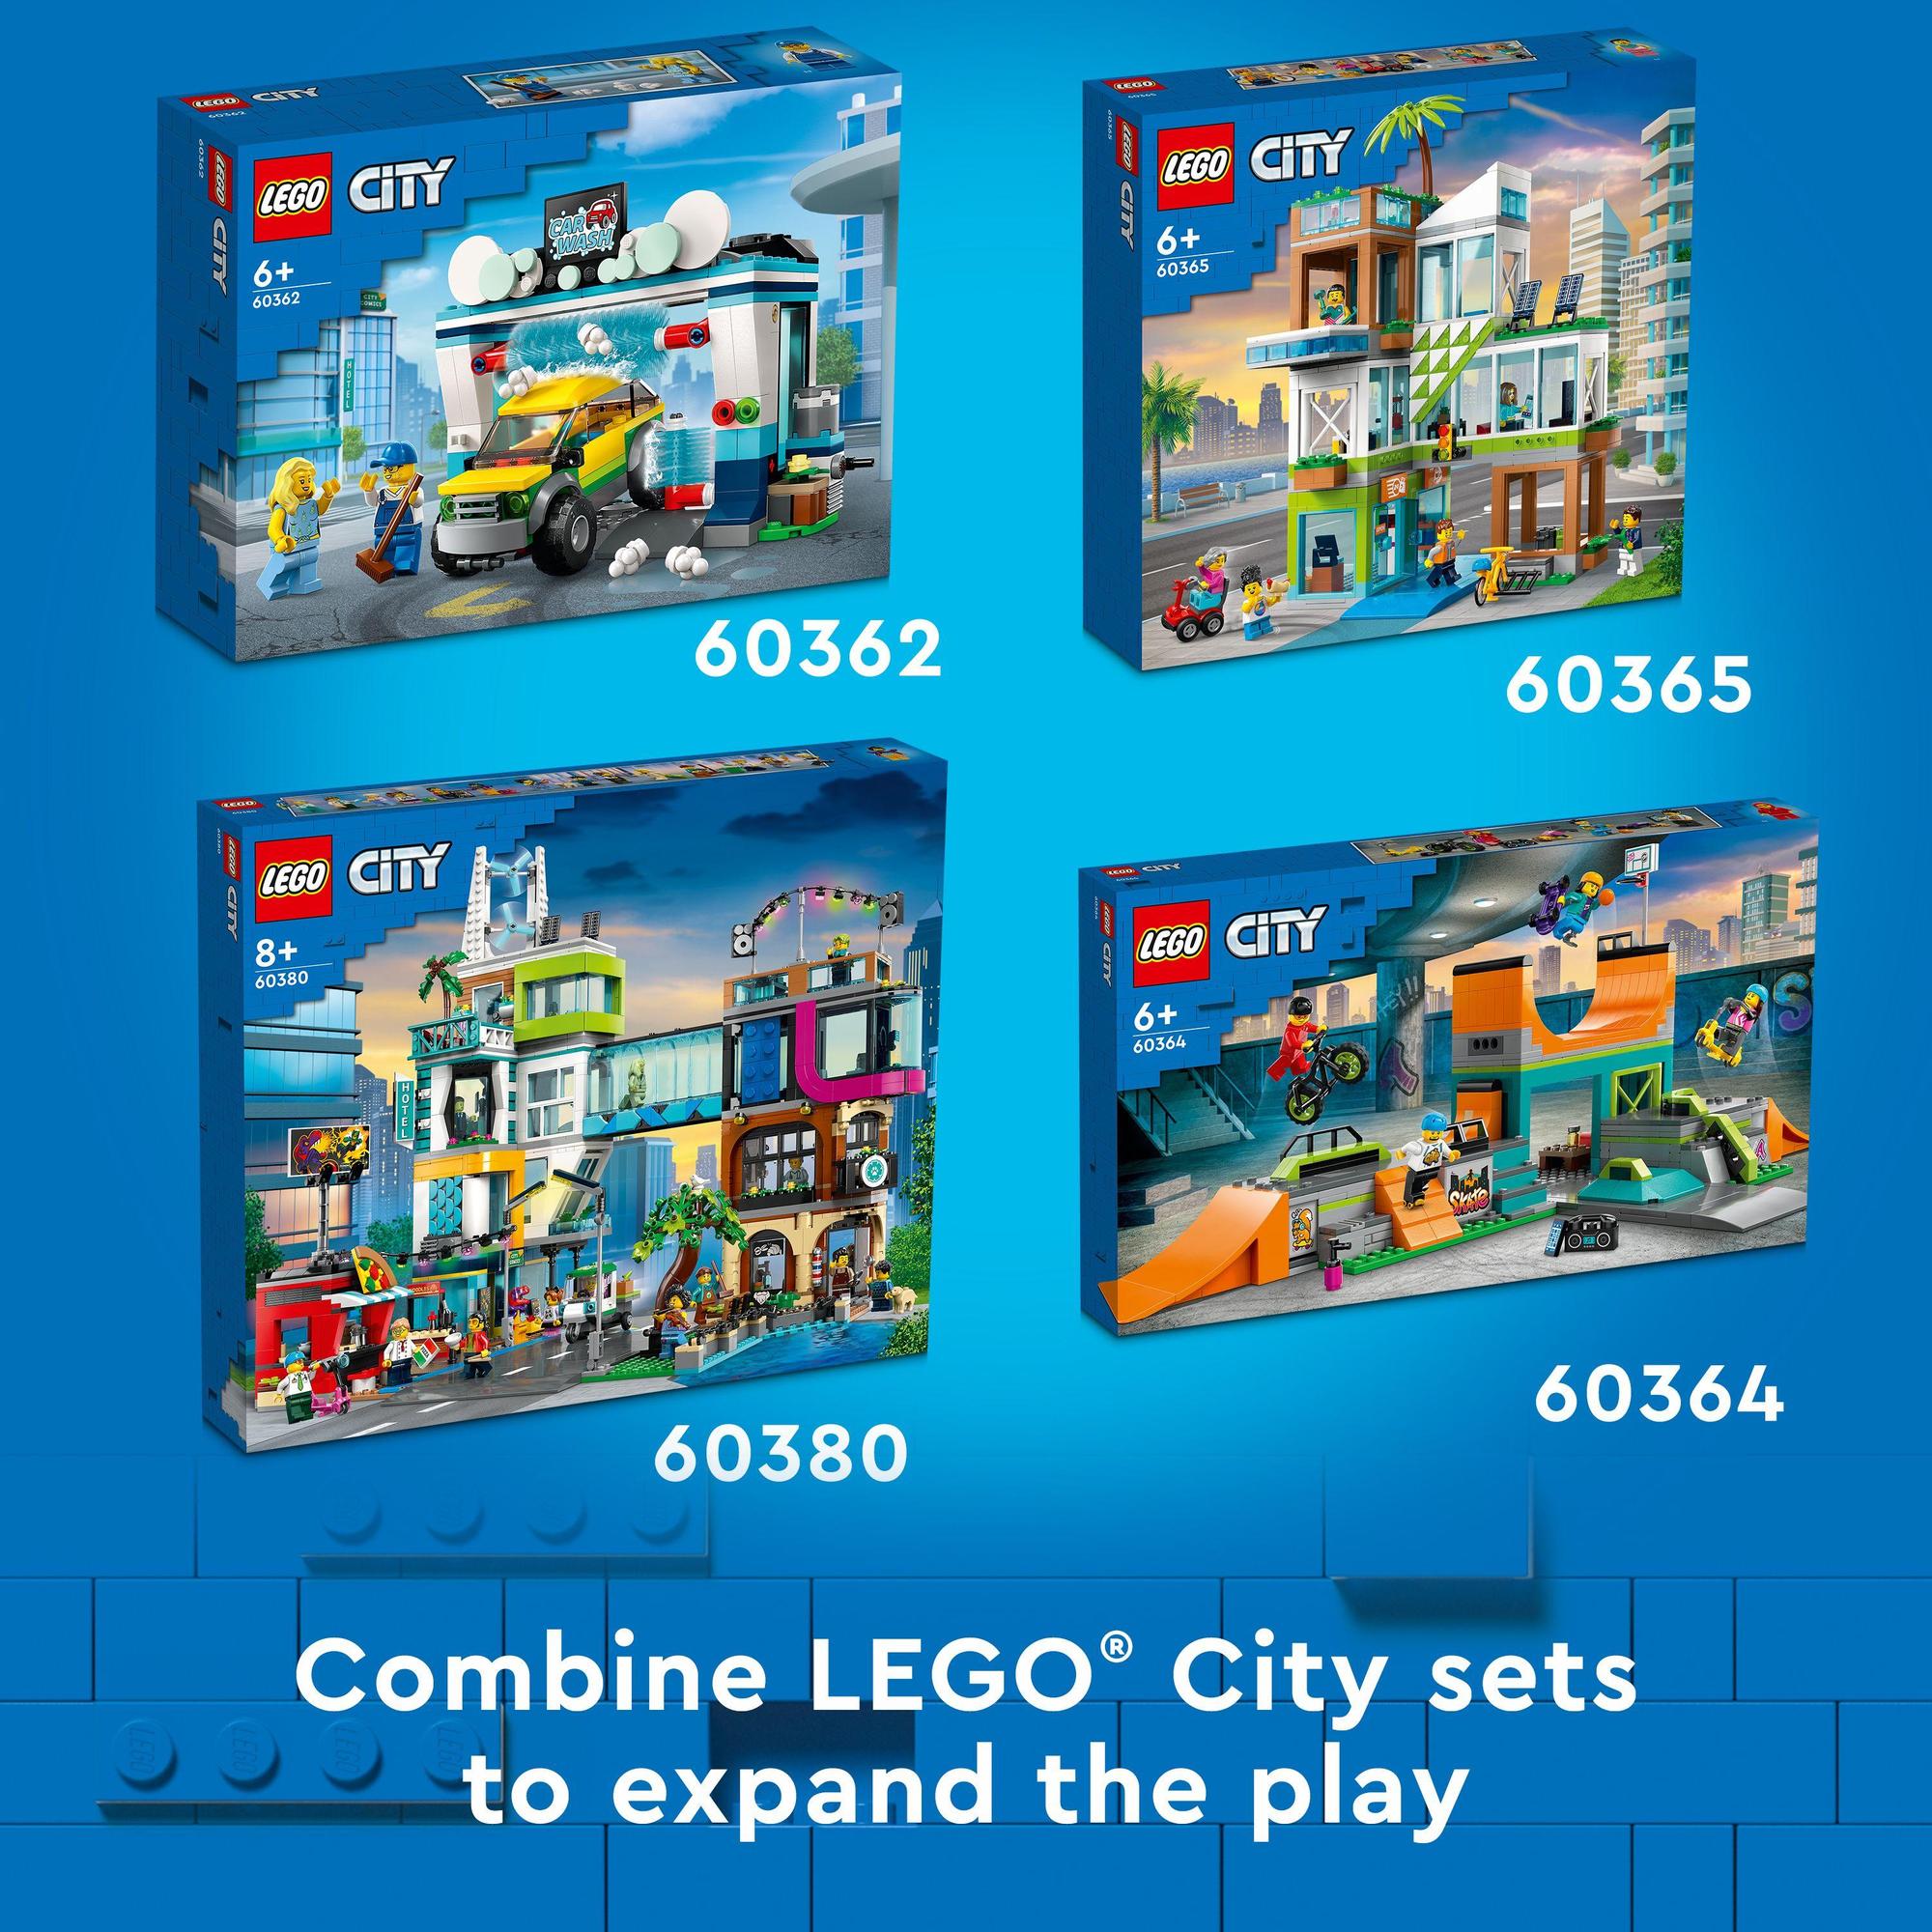 LEGO City 60398 Đồ chơi lắp ráp Ngôi nhà gia đình và xe điện (462 chi tiết)